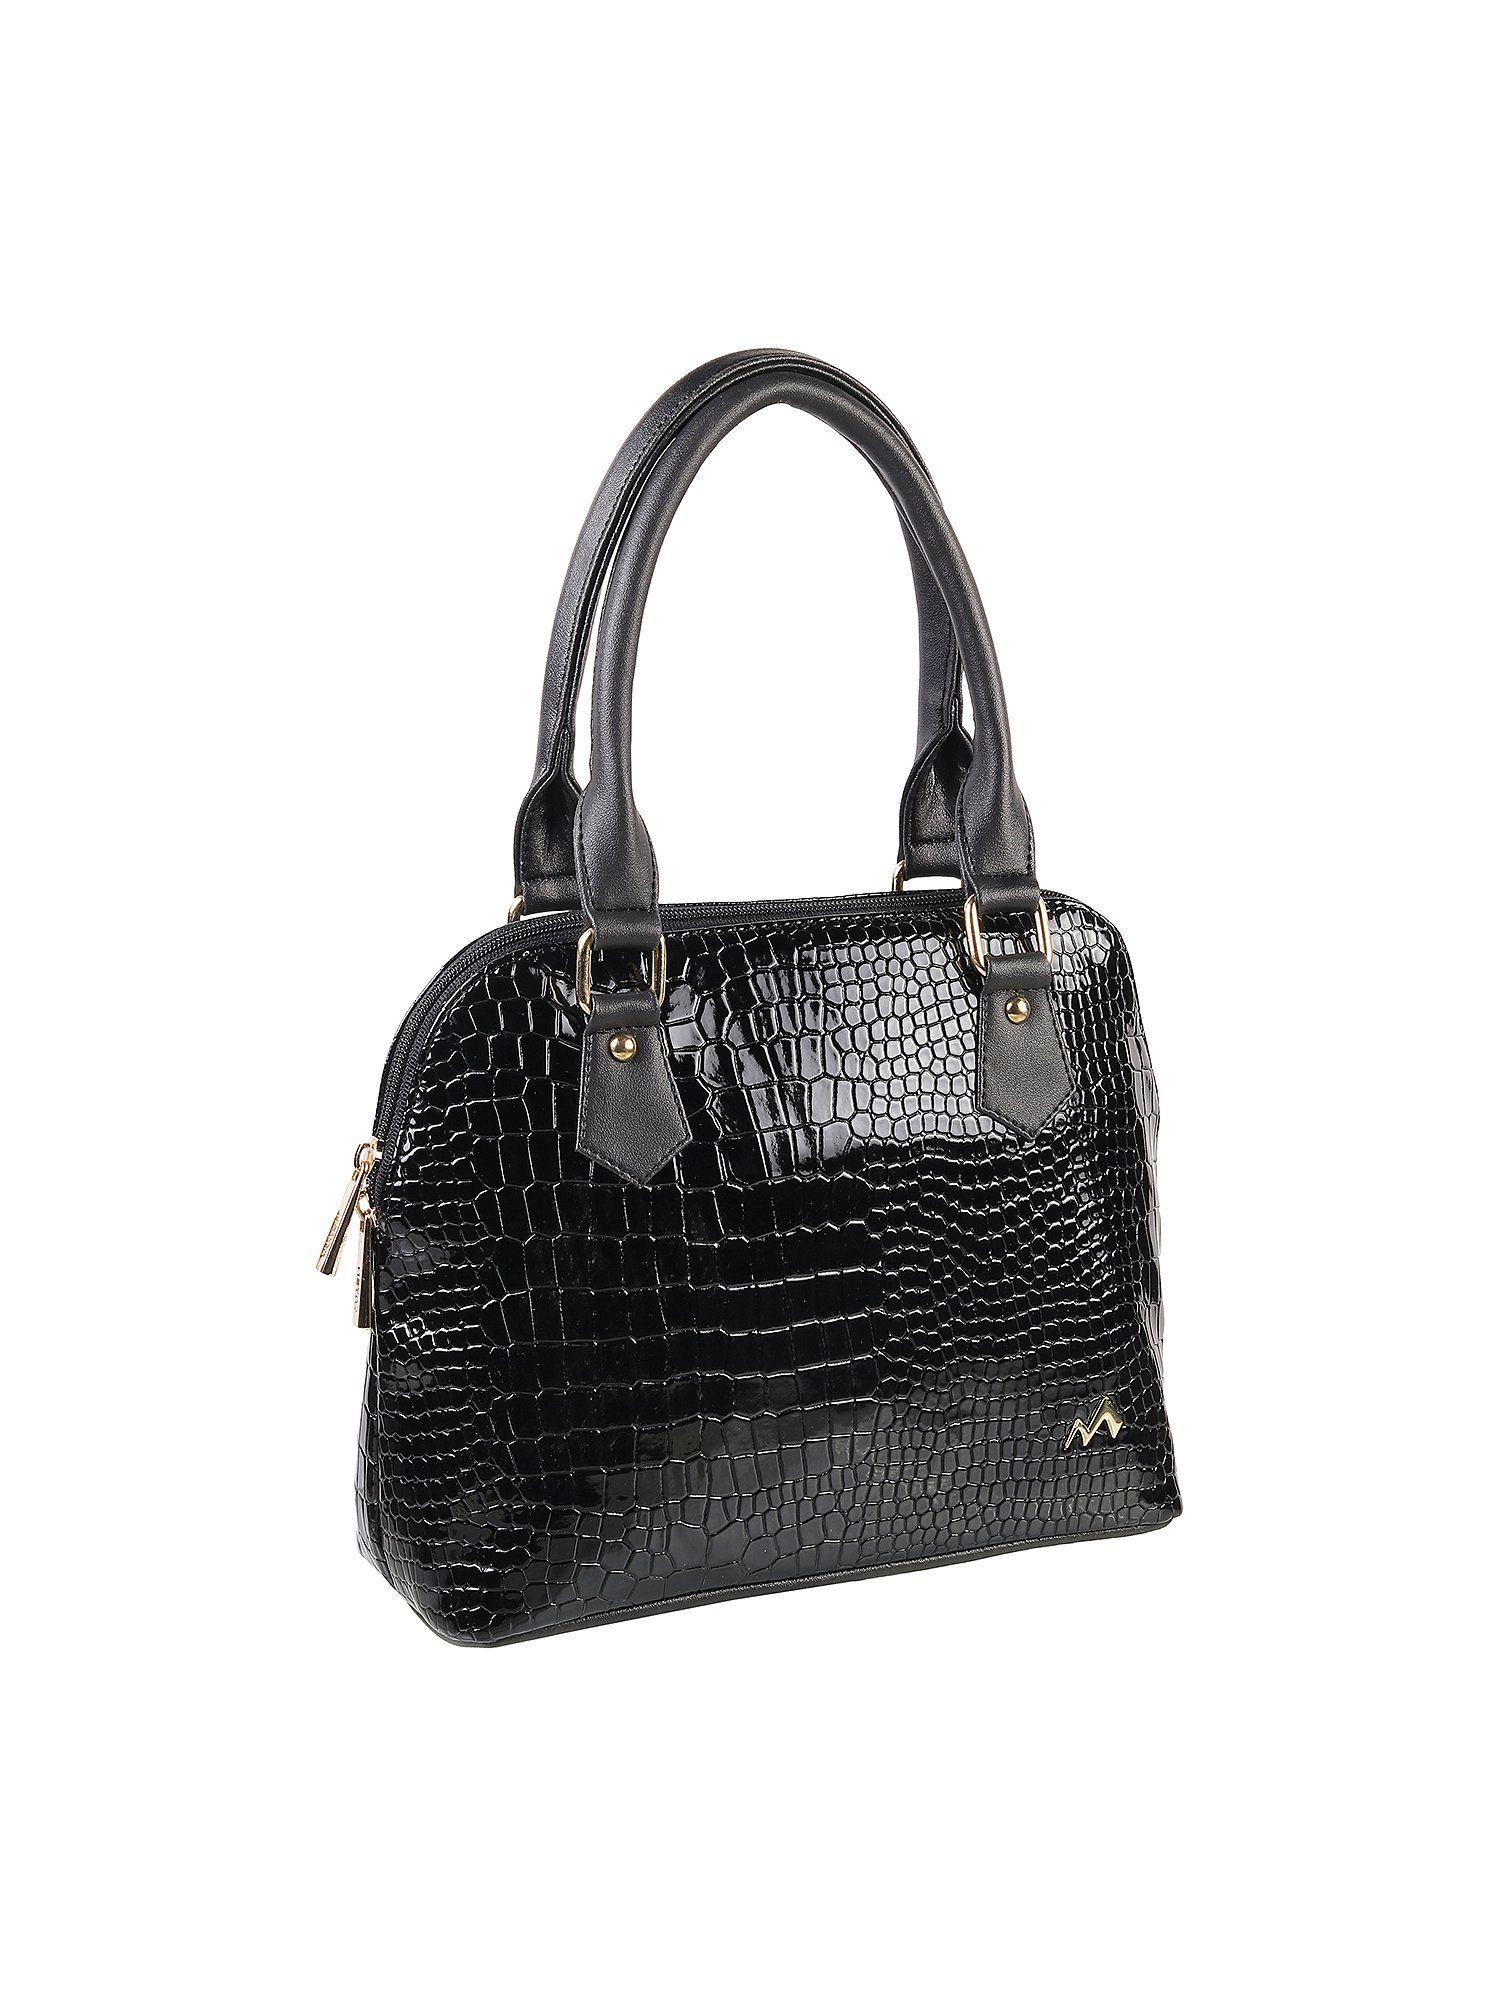 textured black handbag